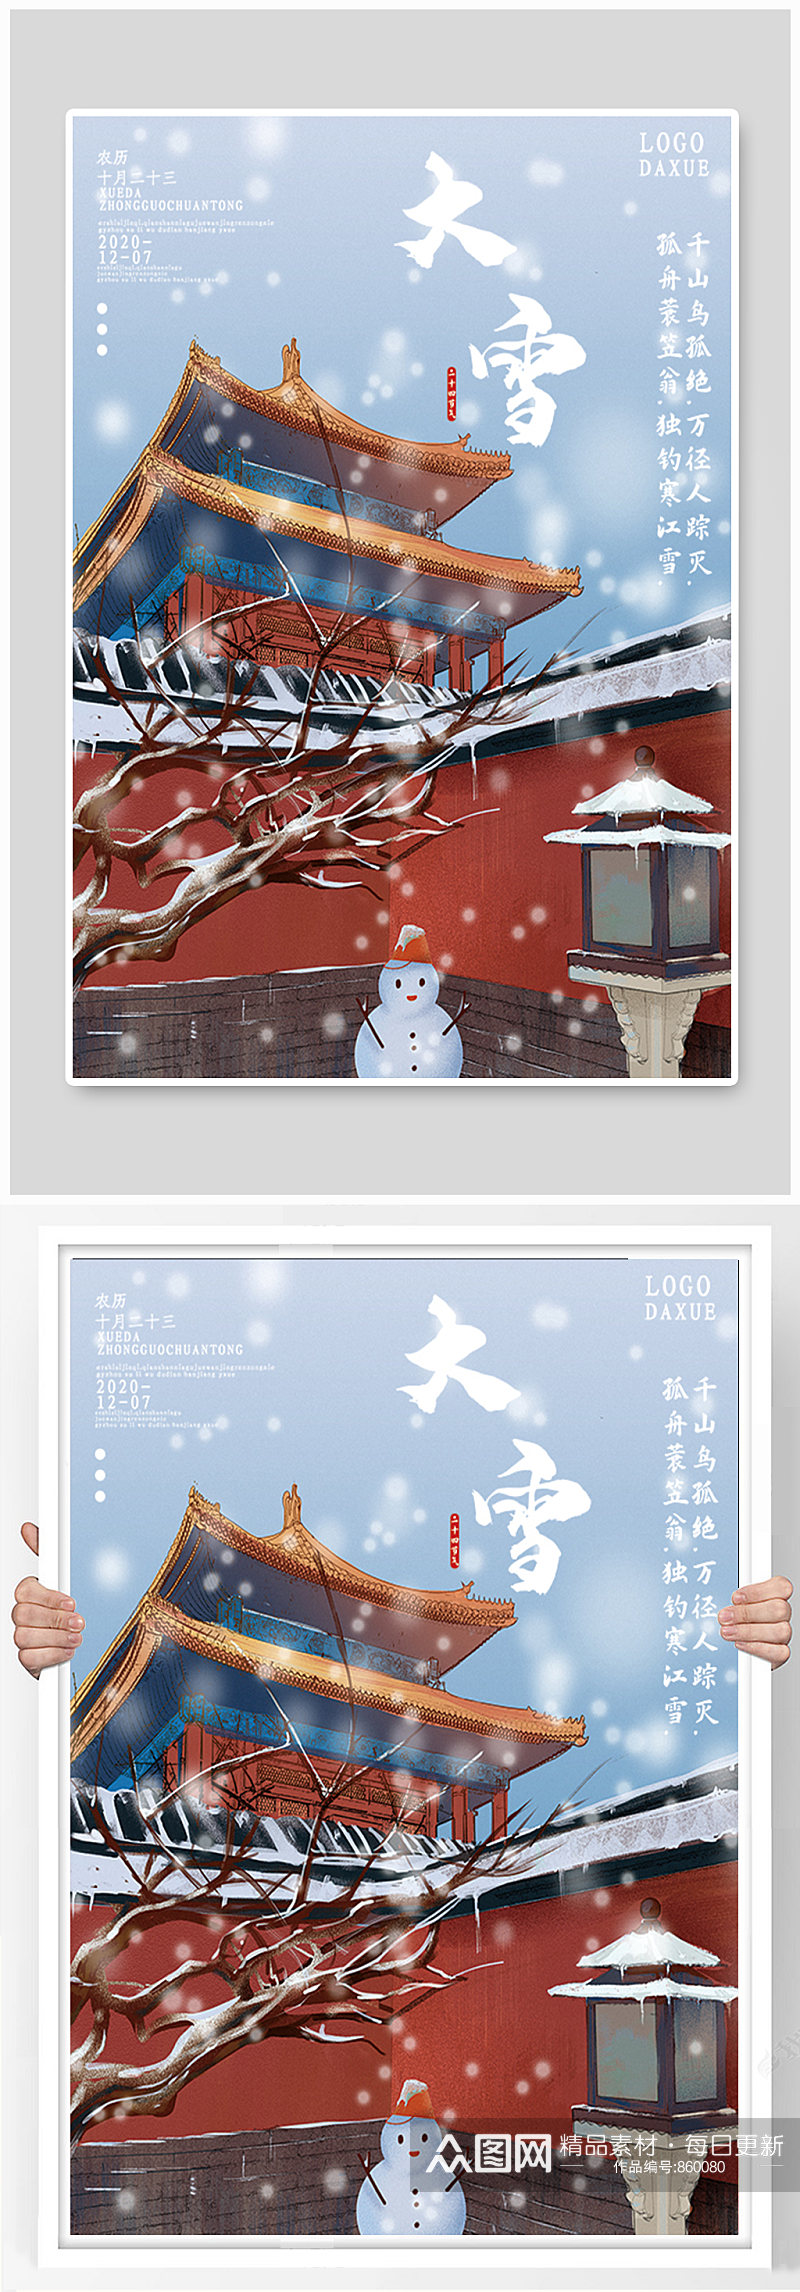 中国传统节日二十四节气大雪海报素材